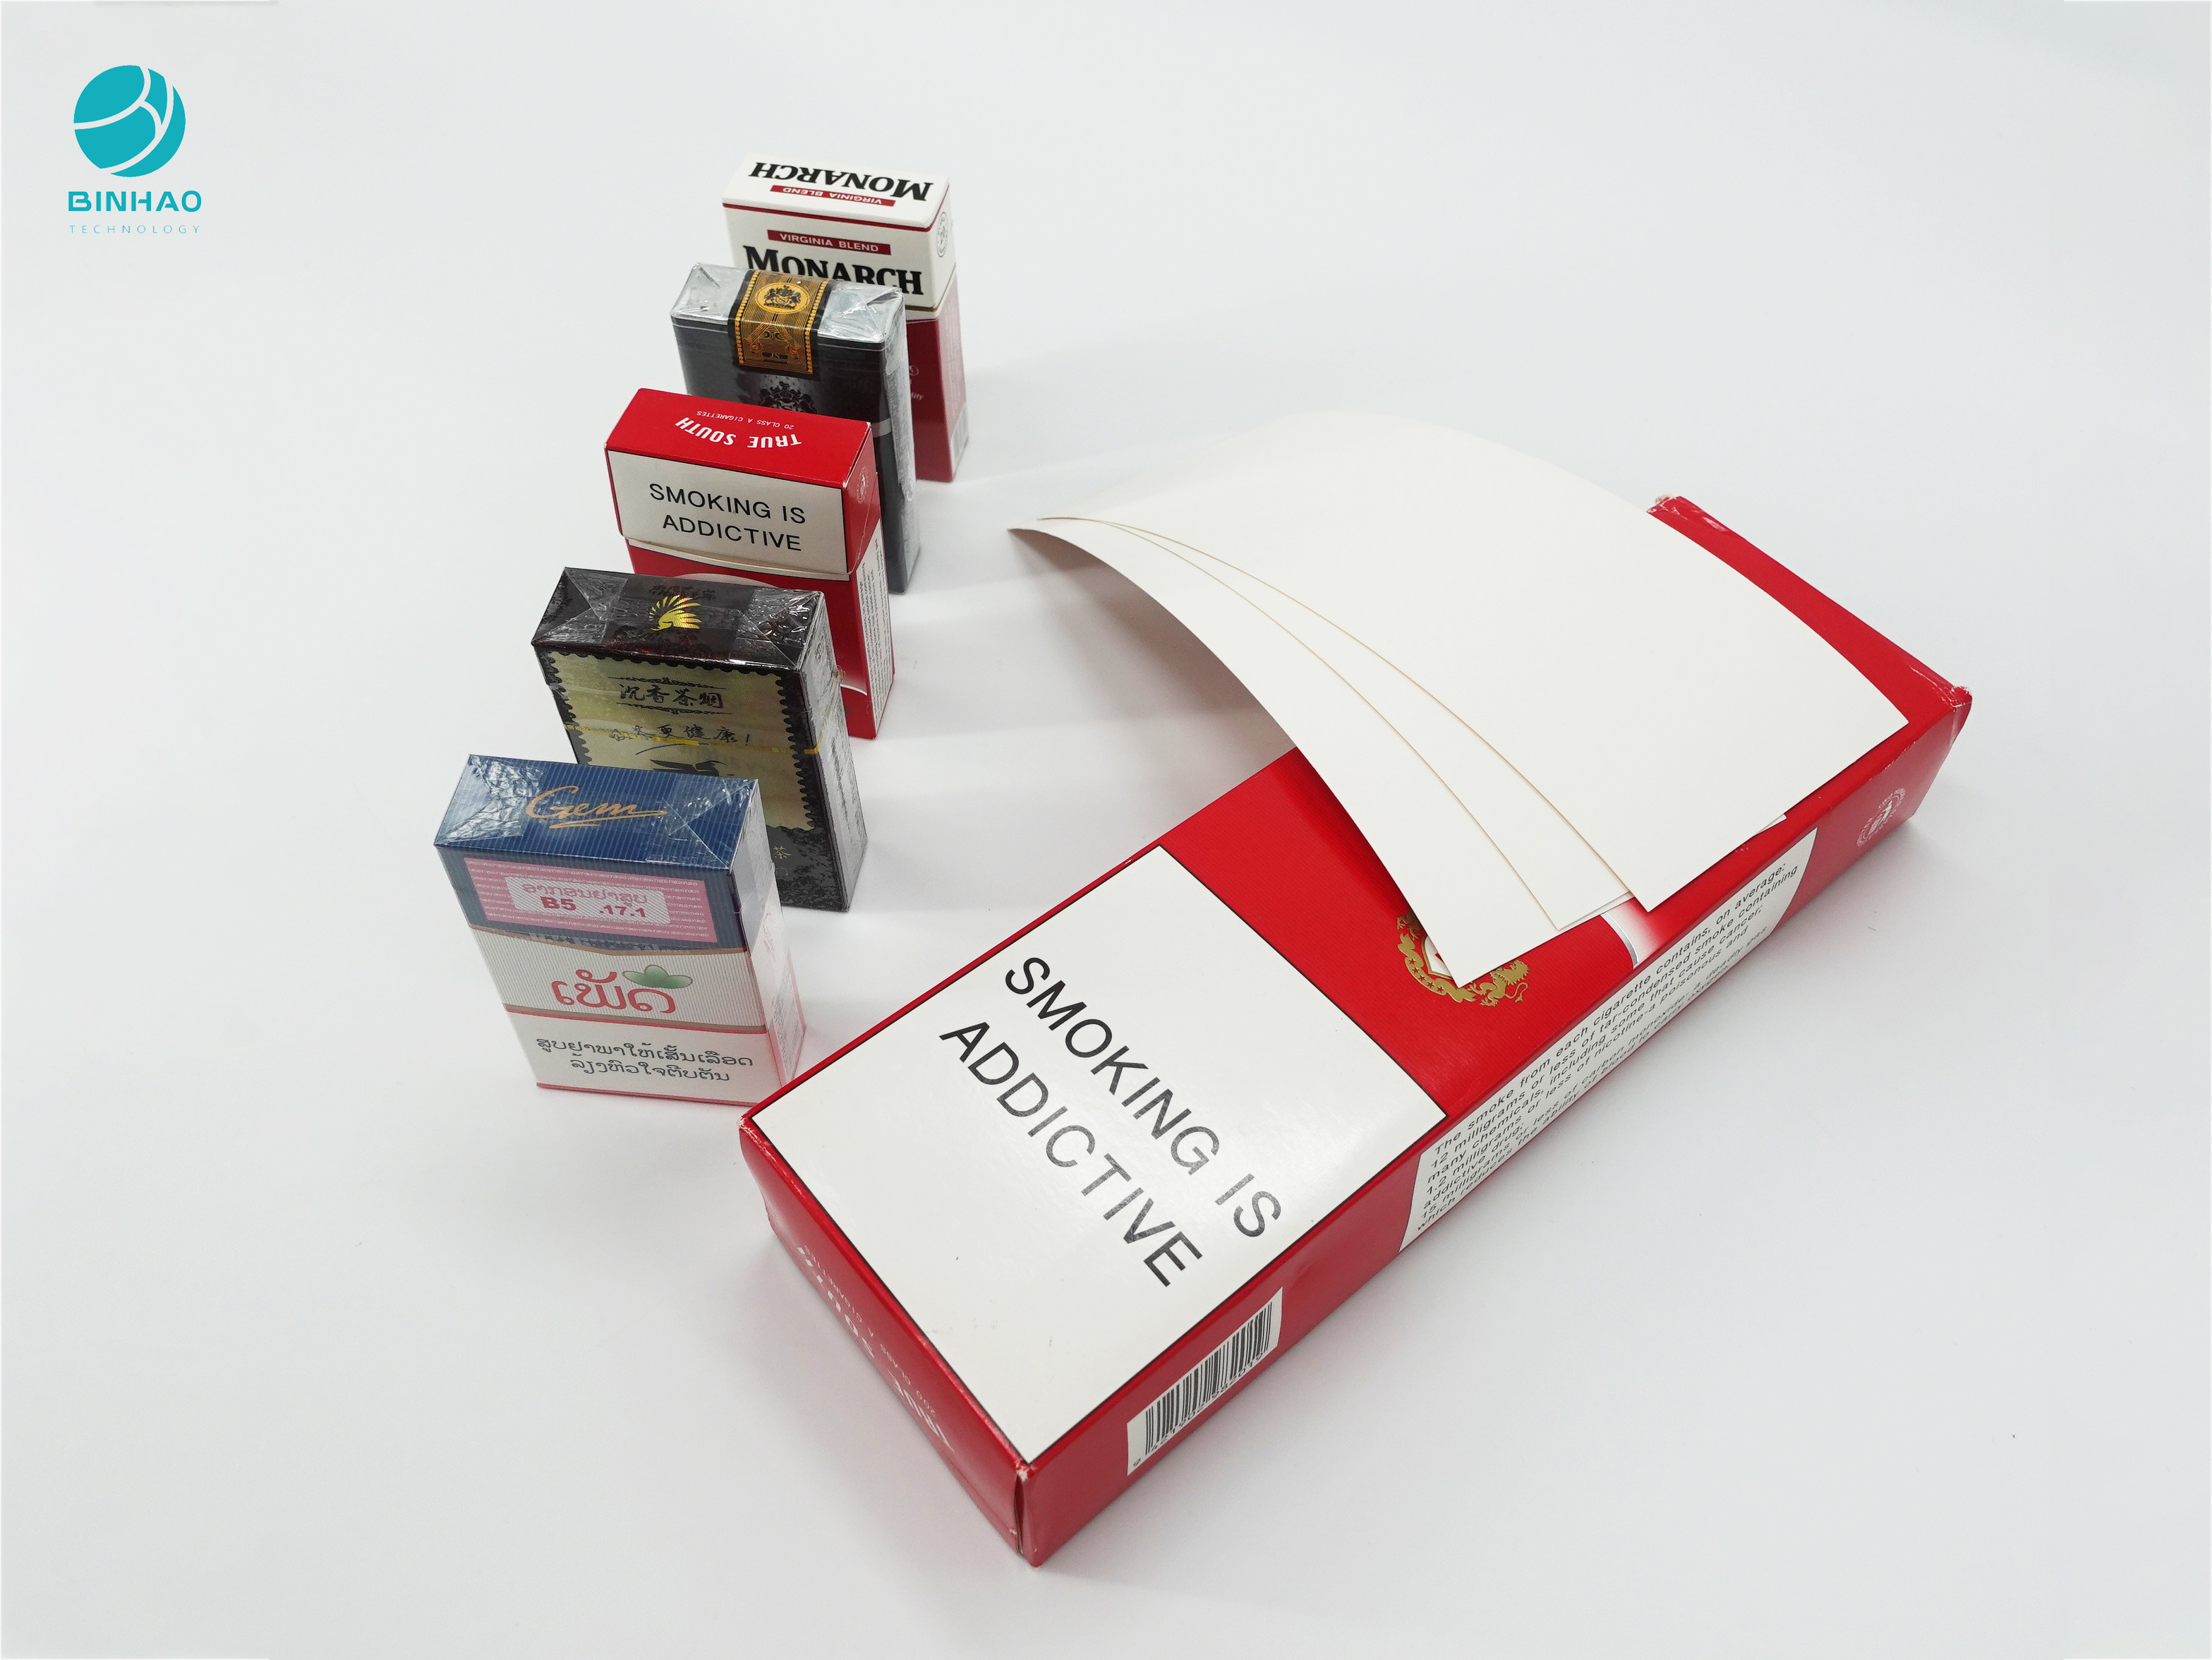 โลโก้นูนที่ทนทานกล่องบรรจุกล่องกระดาษแข็งสำหรับยาสูบบุหรี่